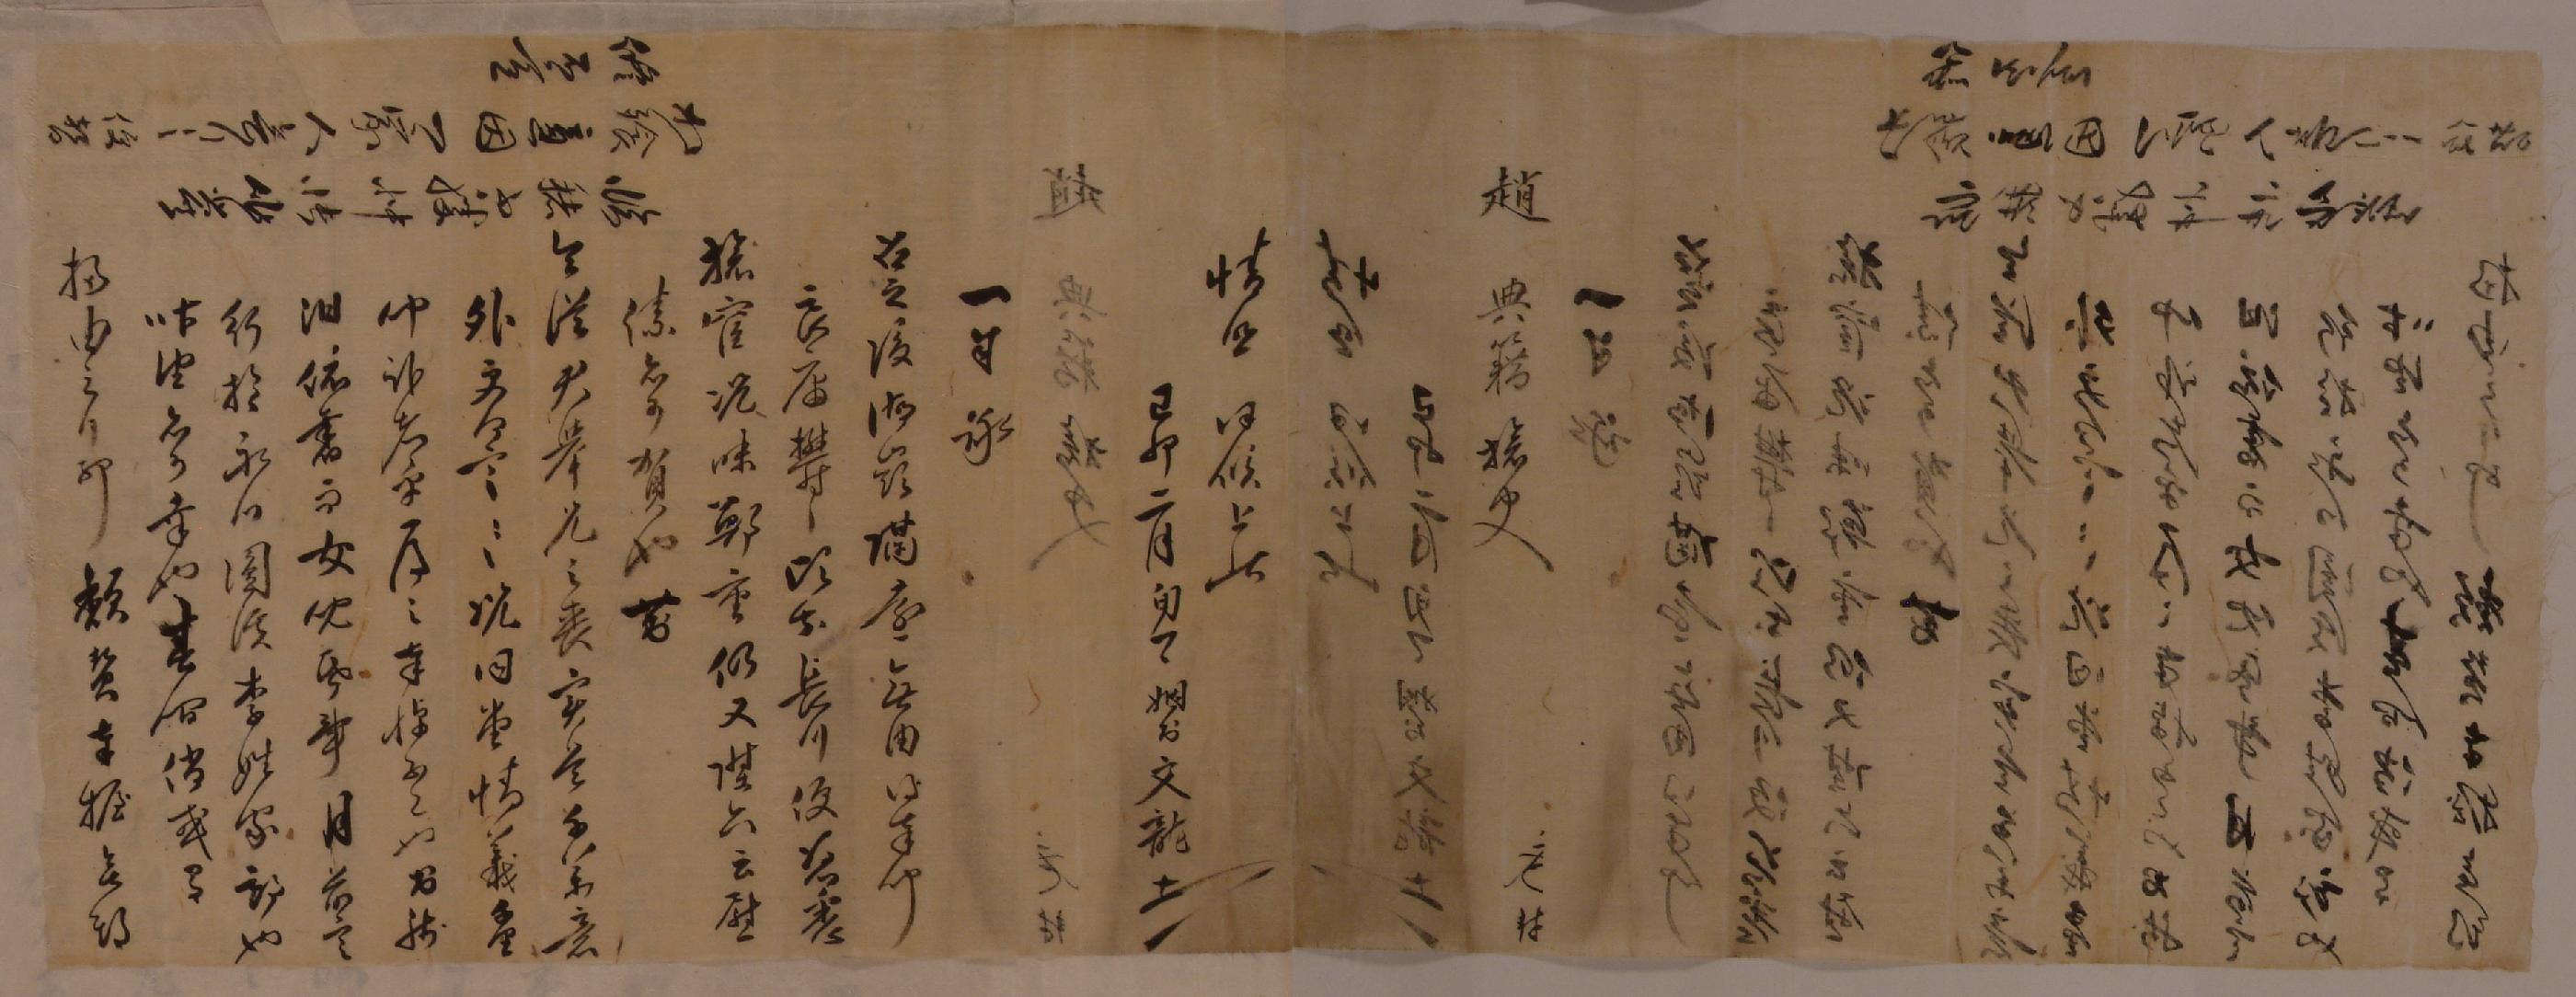 이문룡(李文龍)이 1759년에 전적(典籍)으로 승진한 조석우를 축하하는 편지